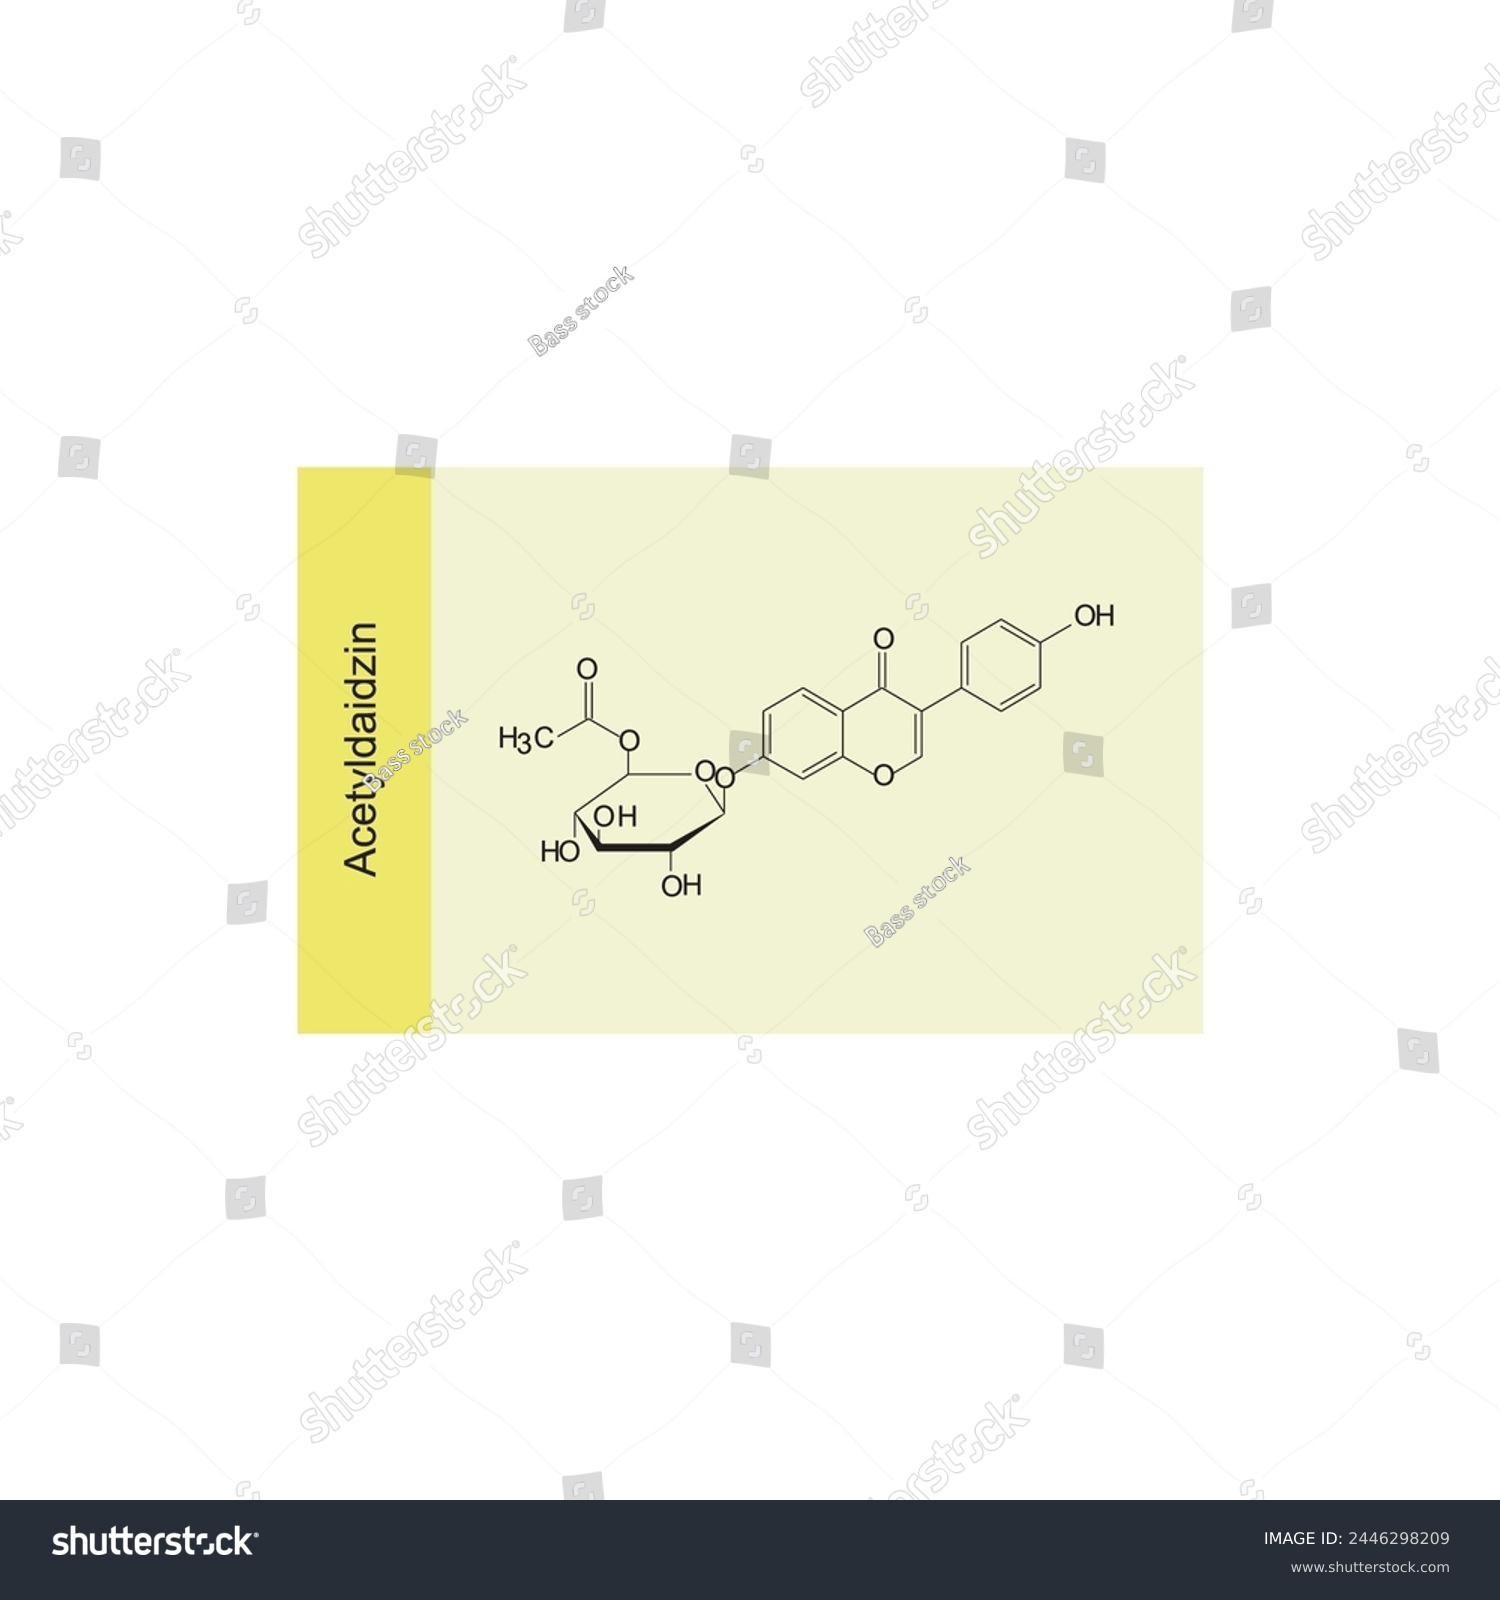 SVG of Acetyldaidzin skeletal structure diagram.Isoflavanone compound molecule scientific illustration on yellow background. svg